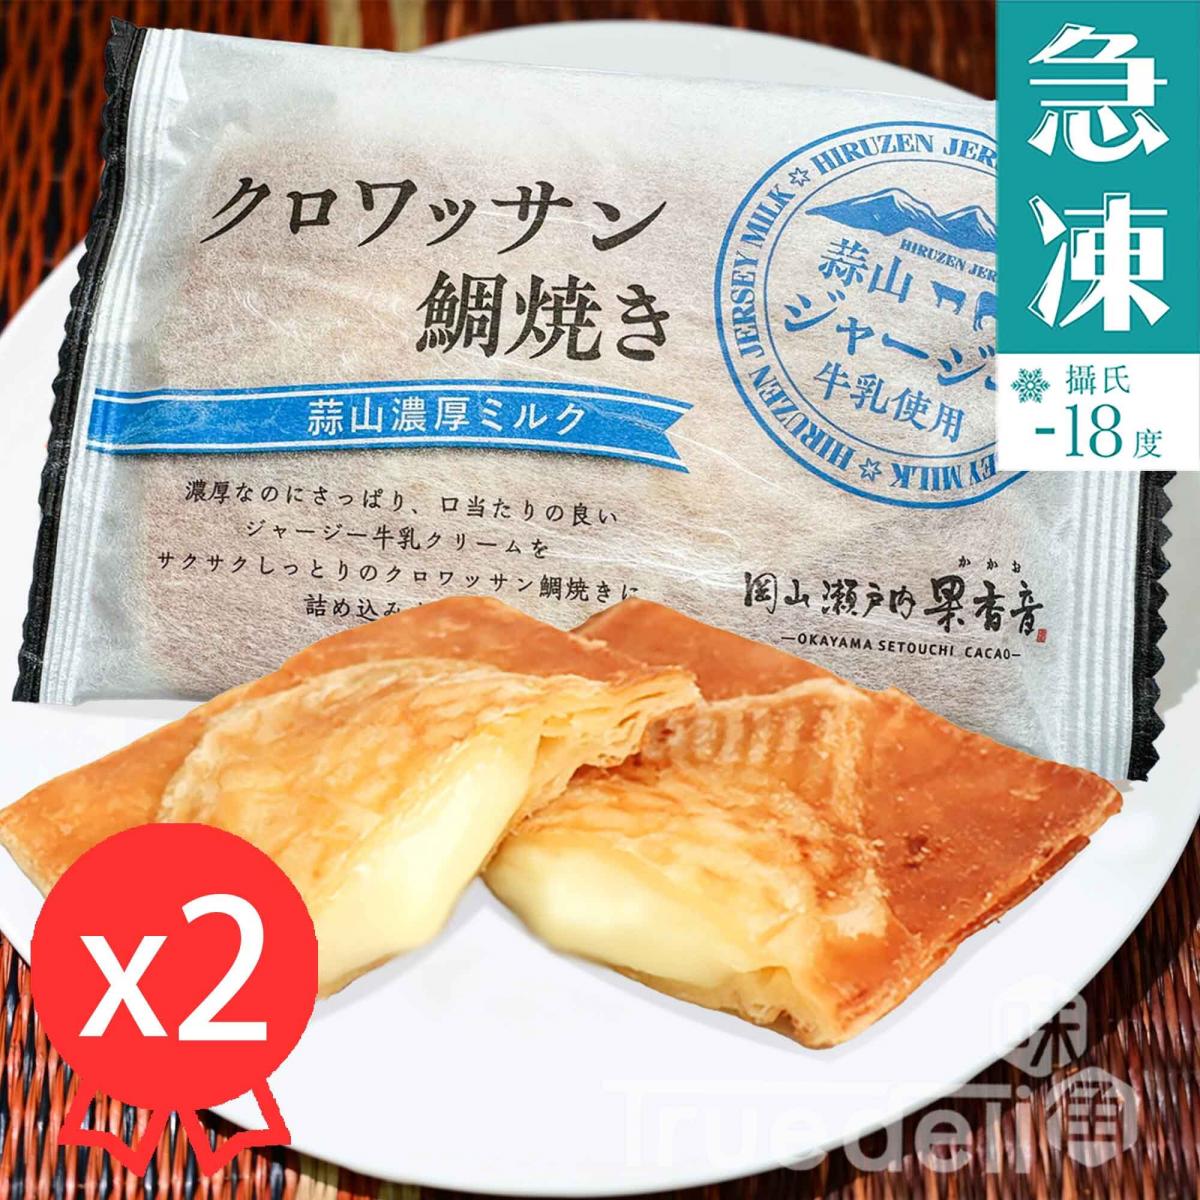 日本酥皮鯛魚燒 - 牛奶味, 80g x 2件 (急凍 -18°C)